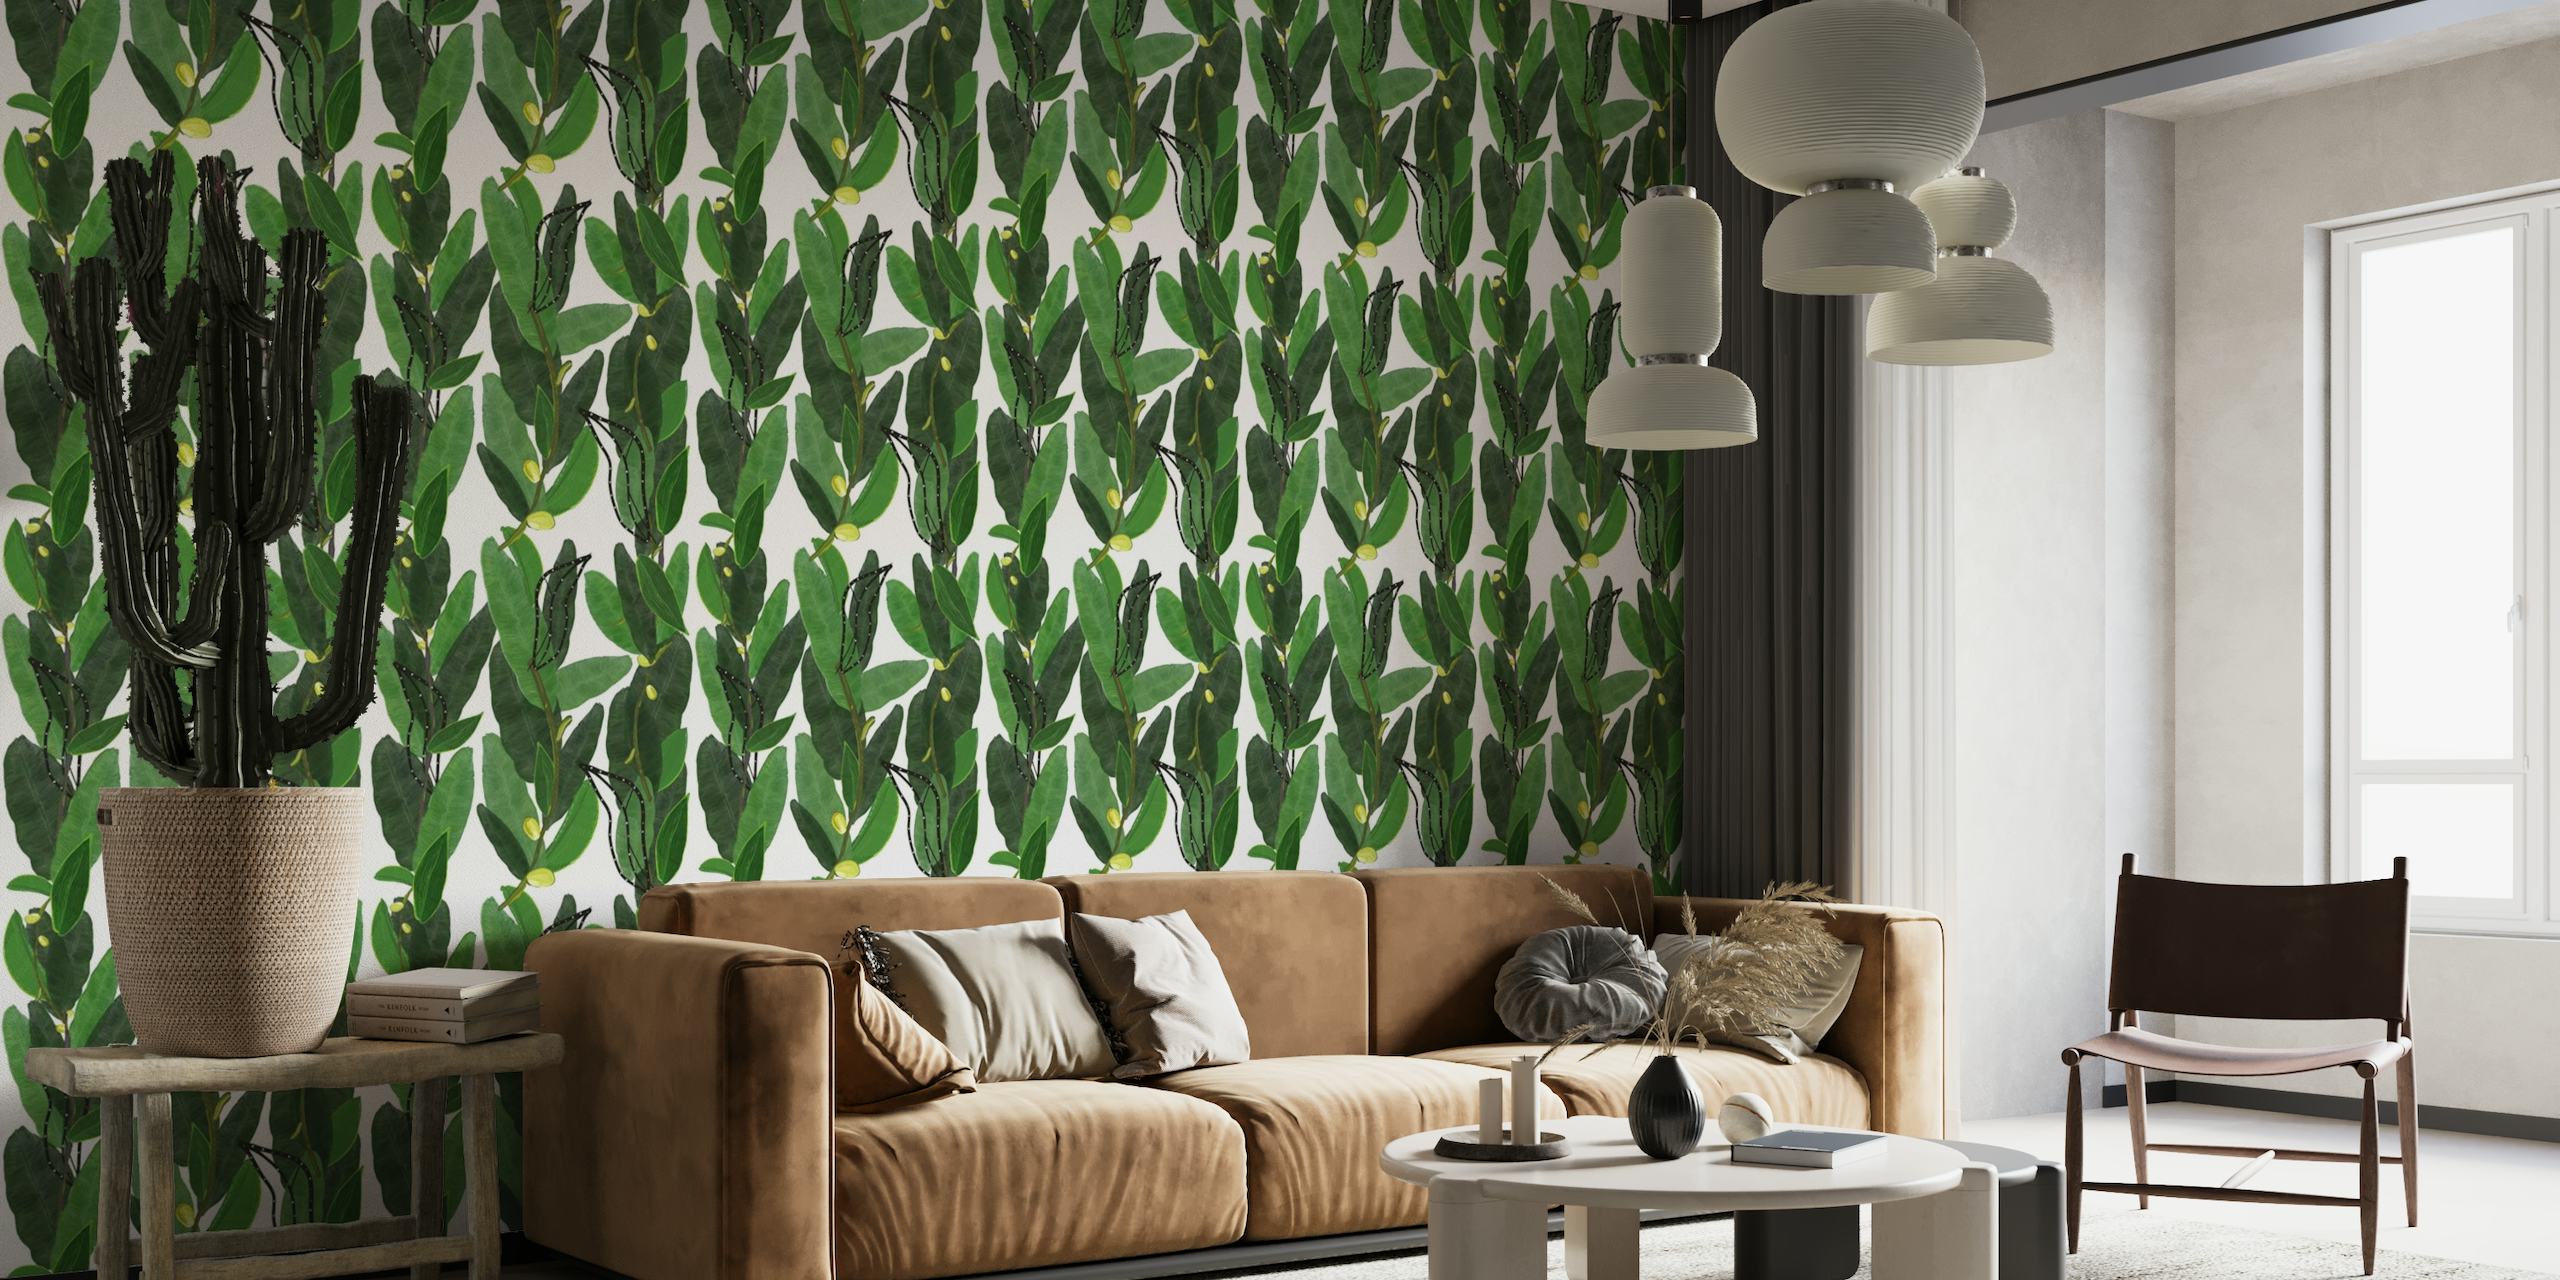 Decorative banana and tropical wallpaper